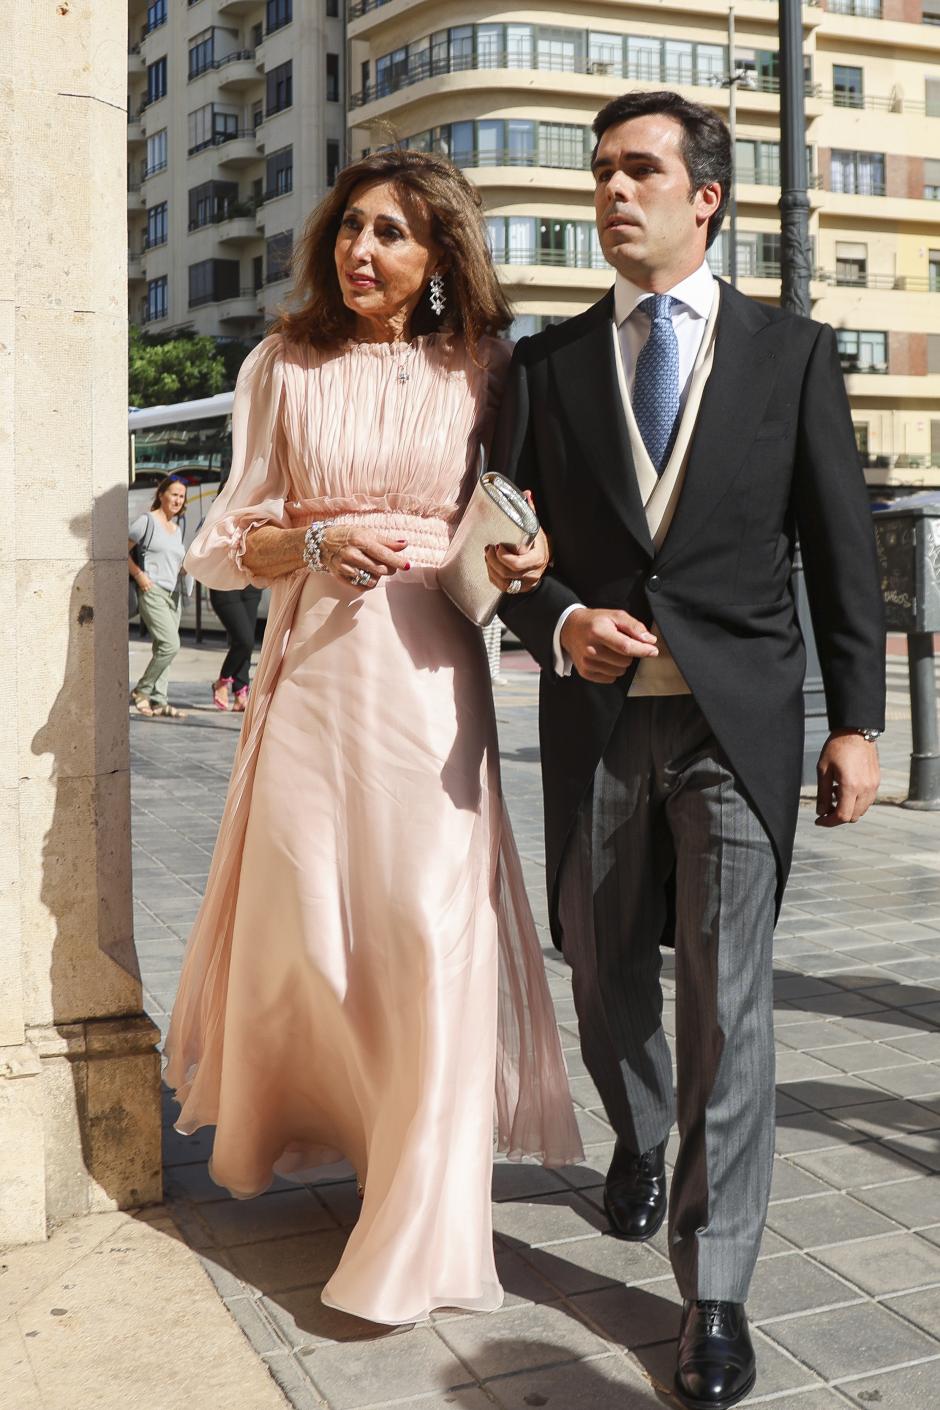 Esteban Rivas Traba during his wedding with Natalia Santos Yanes in Valencia on Saturday, 29 June 2024.